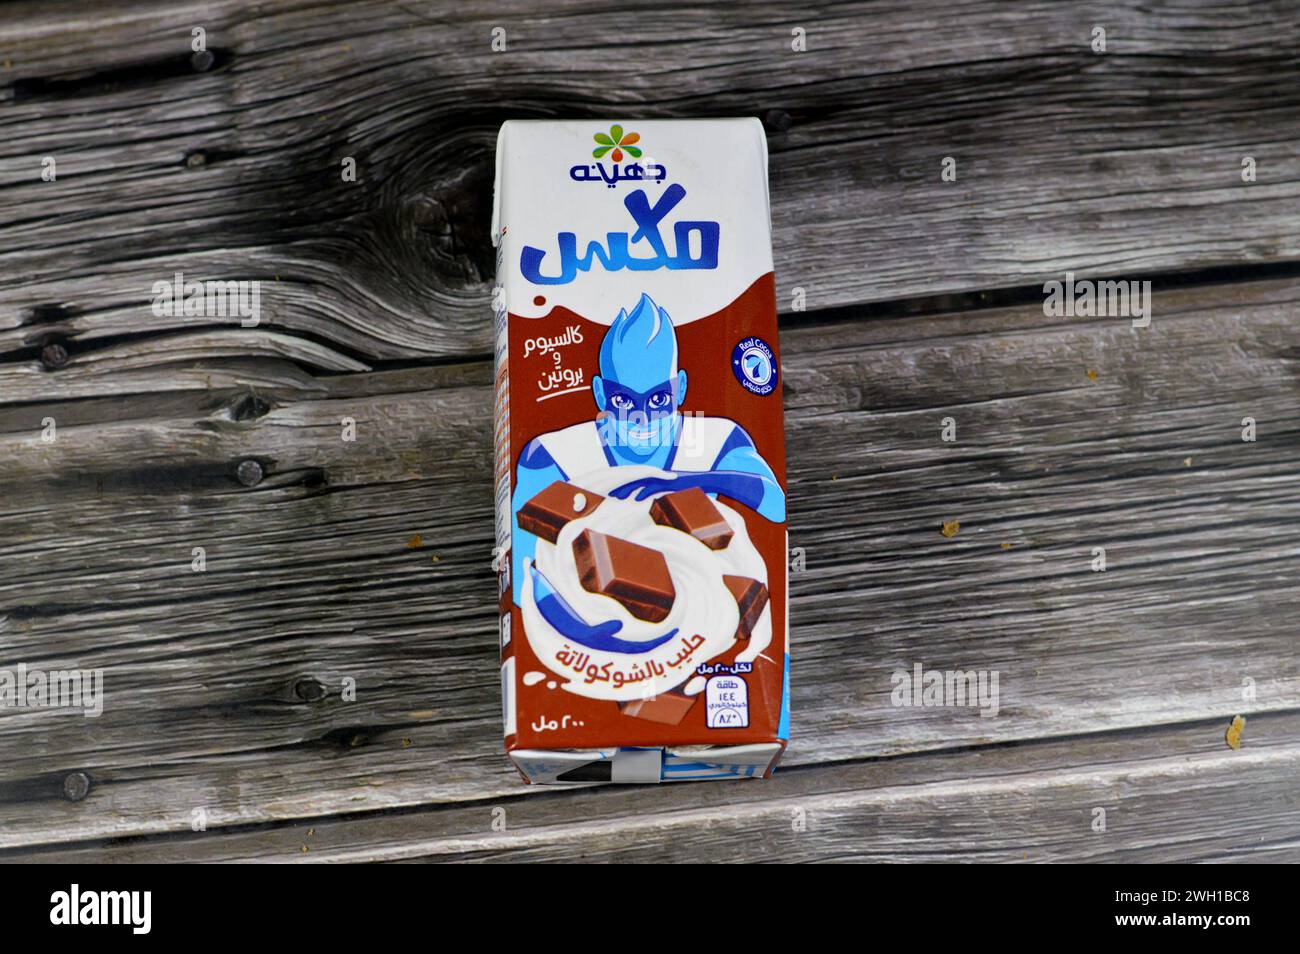 Le Caire, Egypte, 4 février 2024 : Juhayna Chocolate Arôme Milk, un type de lait aromatisé fabriqué en mélangeant des solides de cacao avec du lait, des mélanges de boisson de cacao Banque D'Images